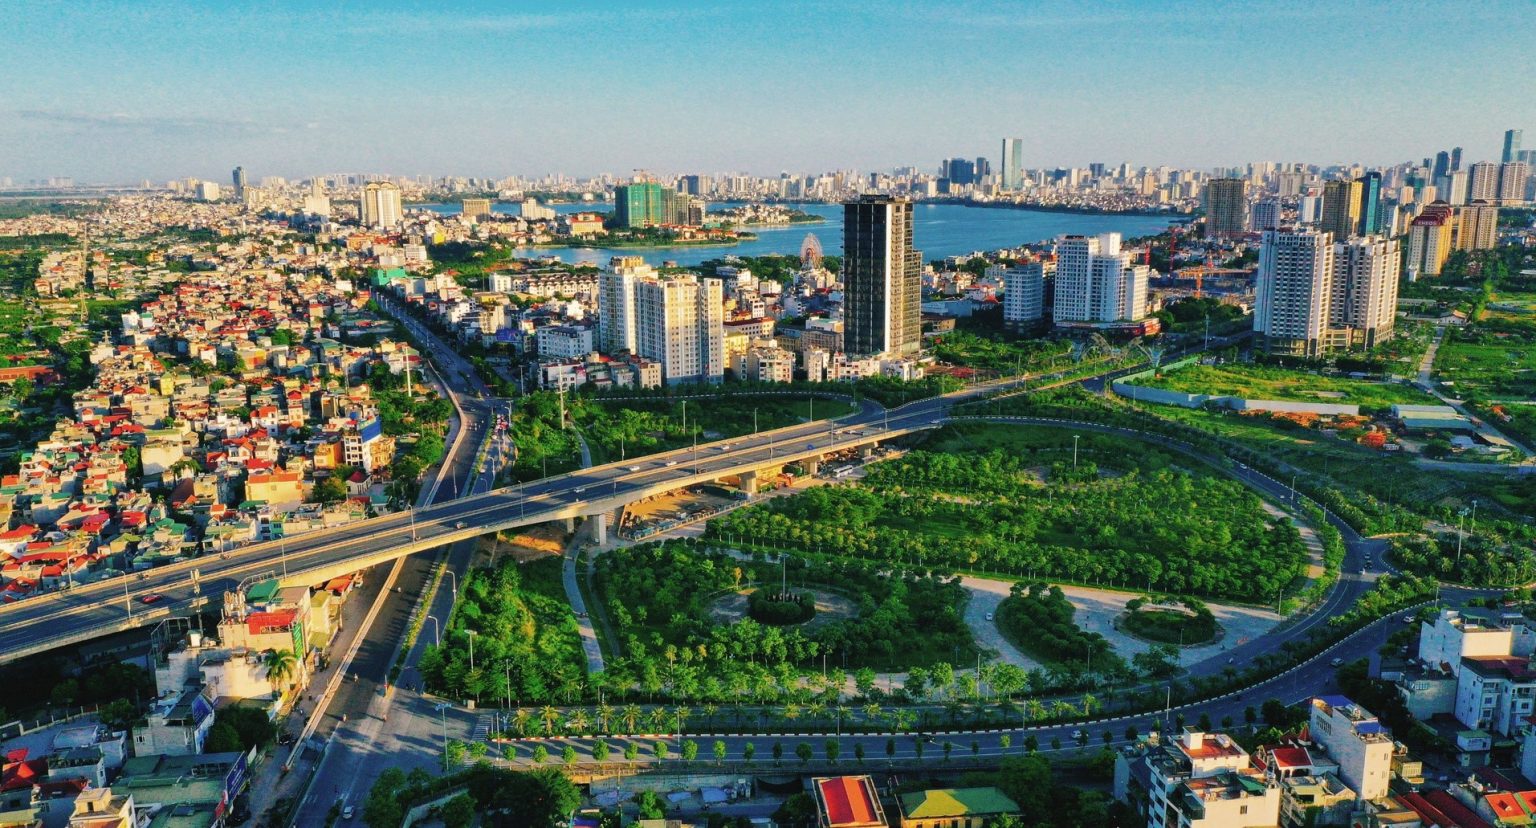 Xu hướng đầu tư thay đổi, chung cư phía tây Hà Nội tăng giá vùn vụt 5